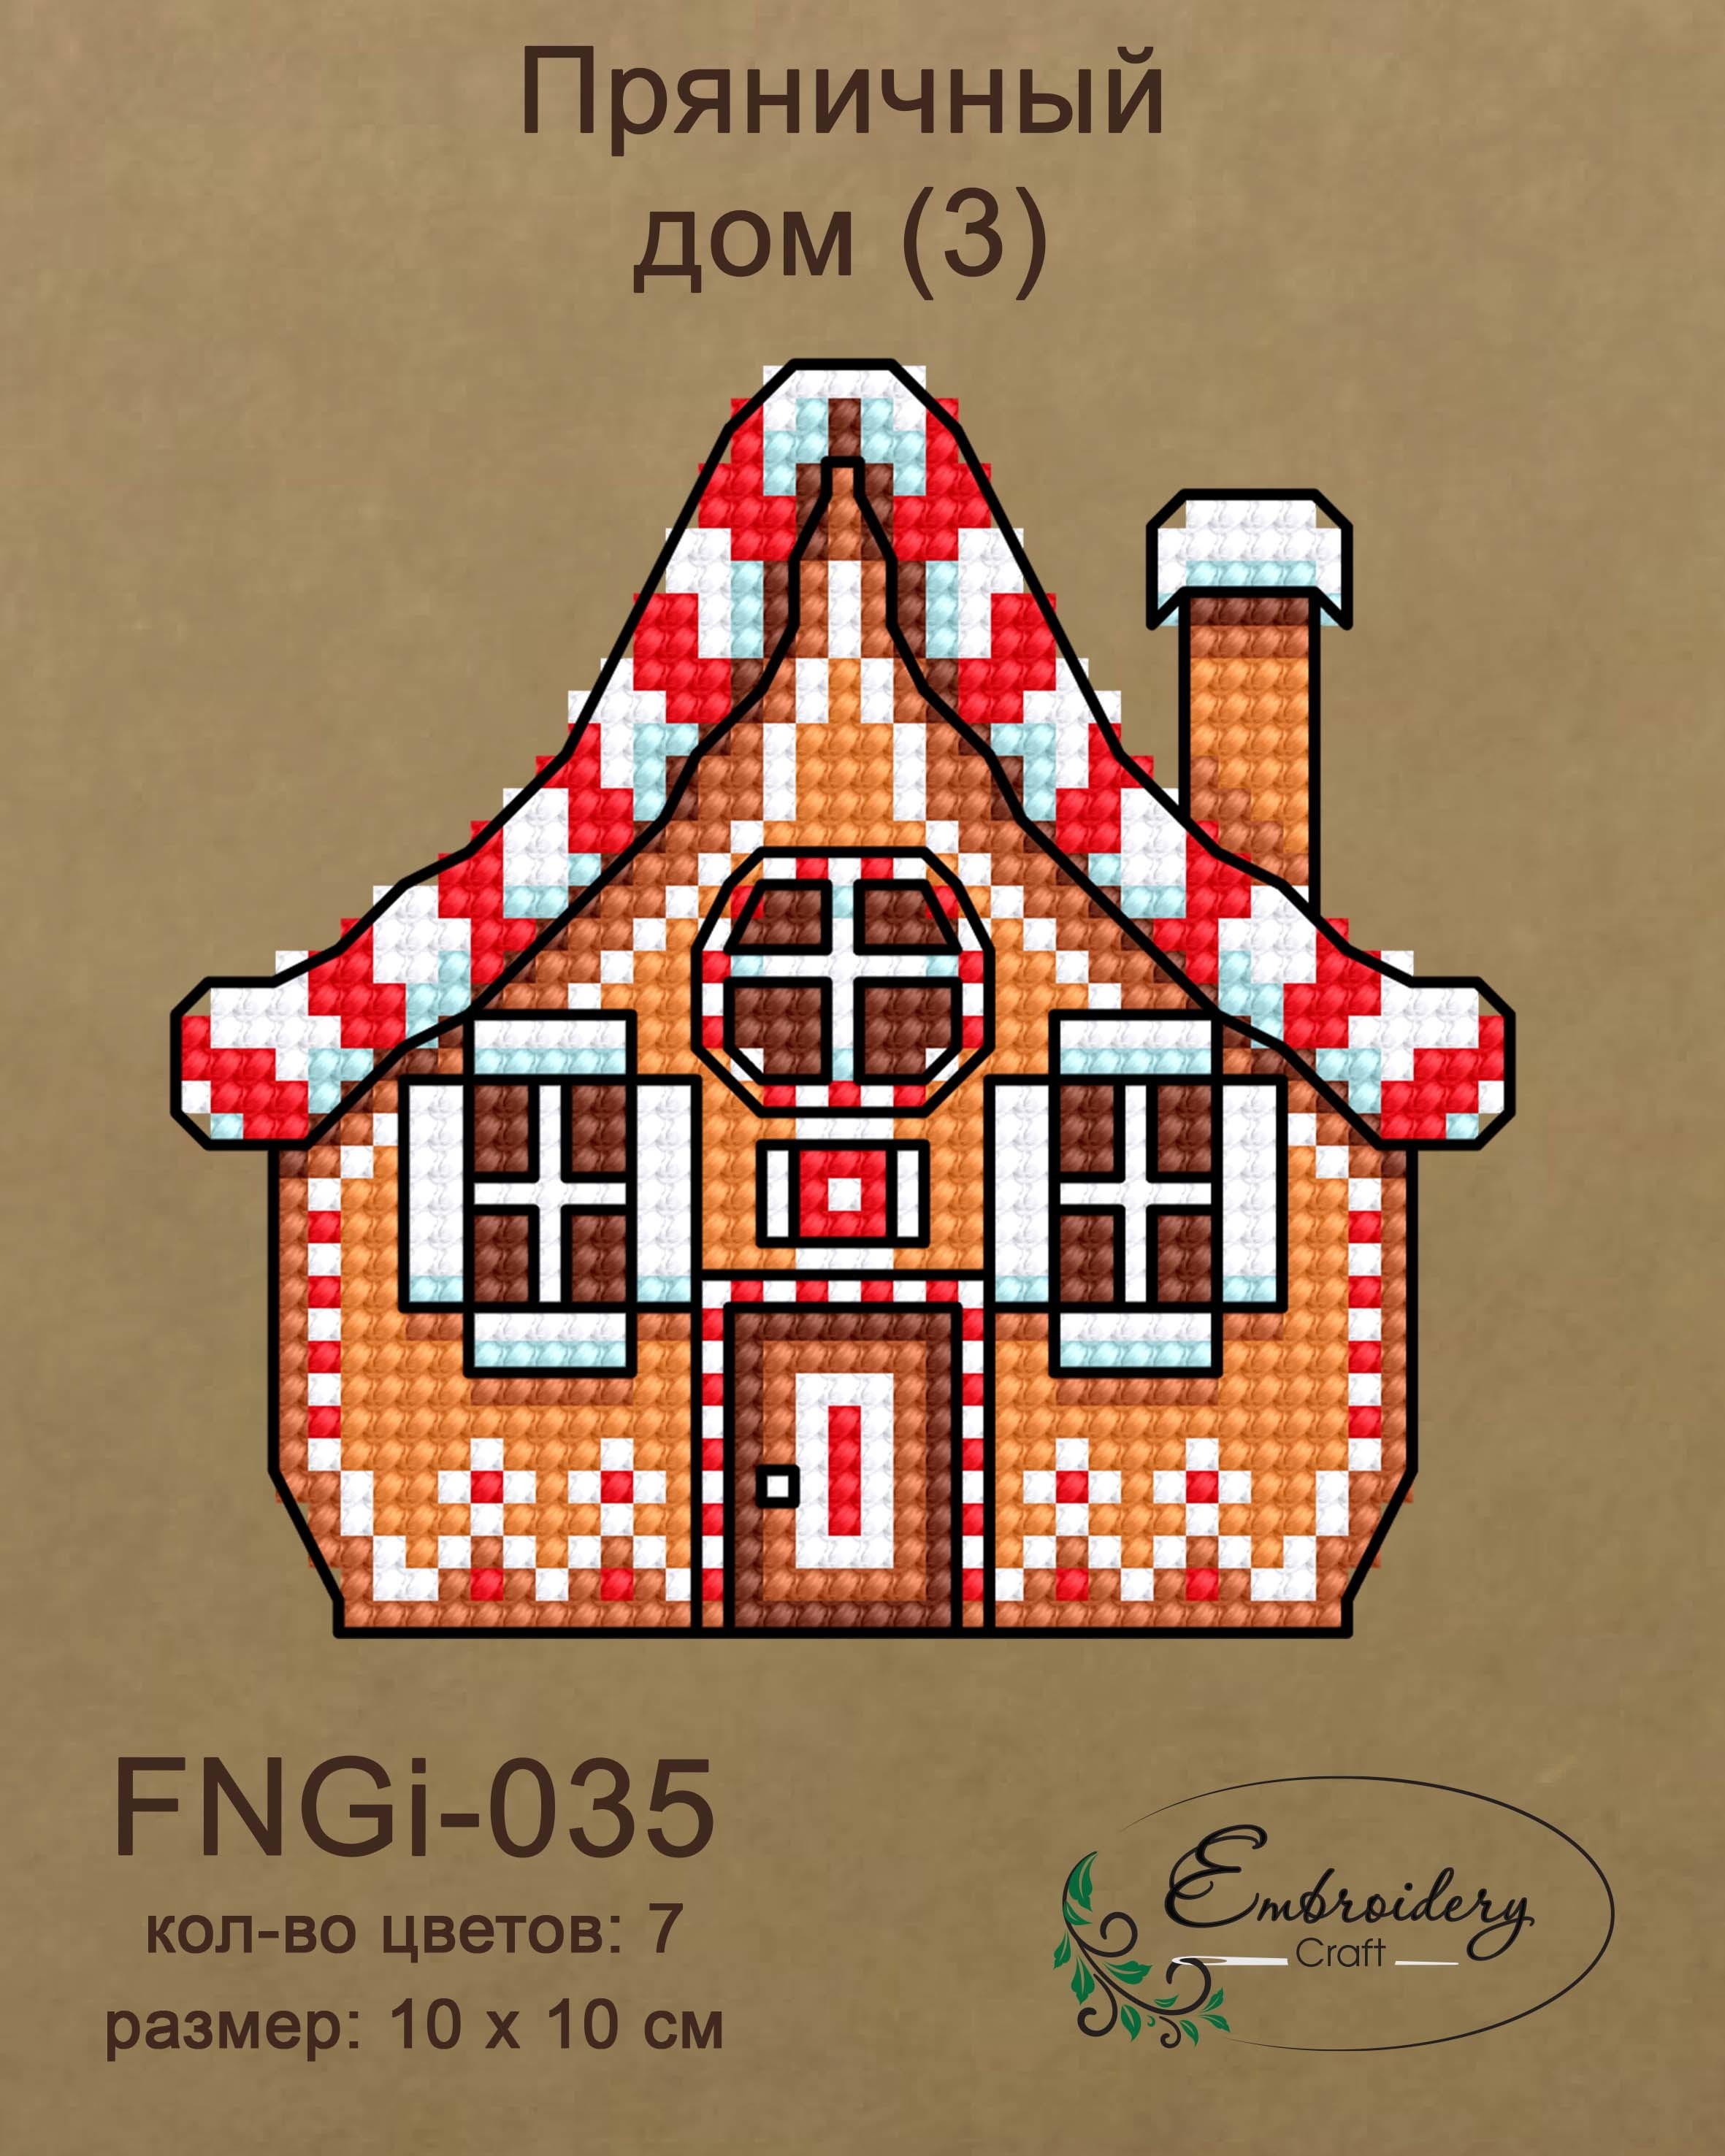 FNNGi-035 Пряничный дом (3)